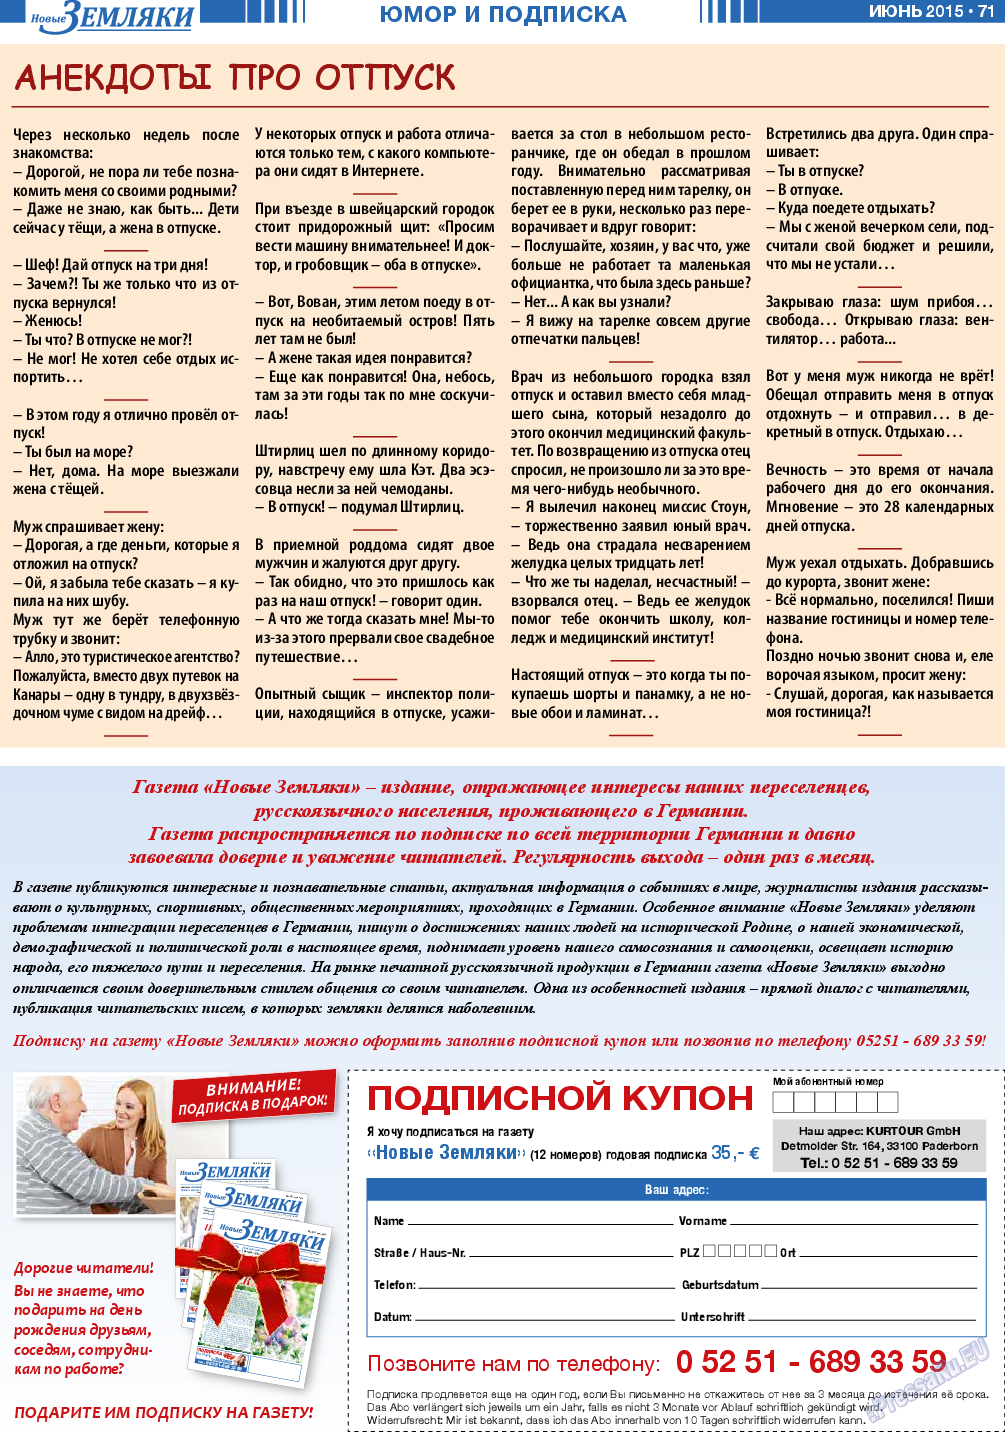 Новые Земляки, газета. 2015 №6 стр.71